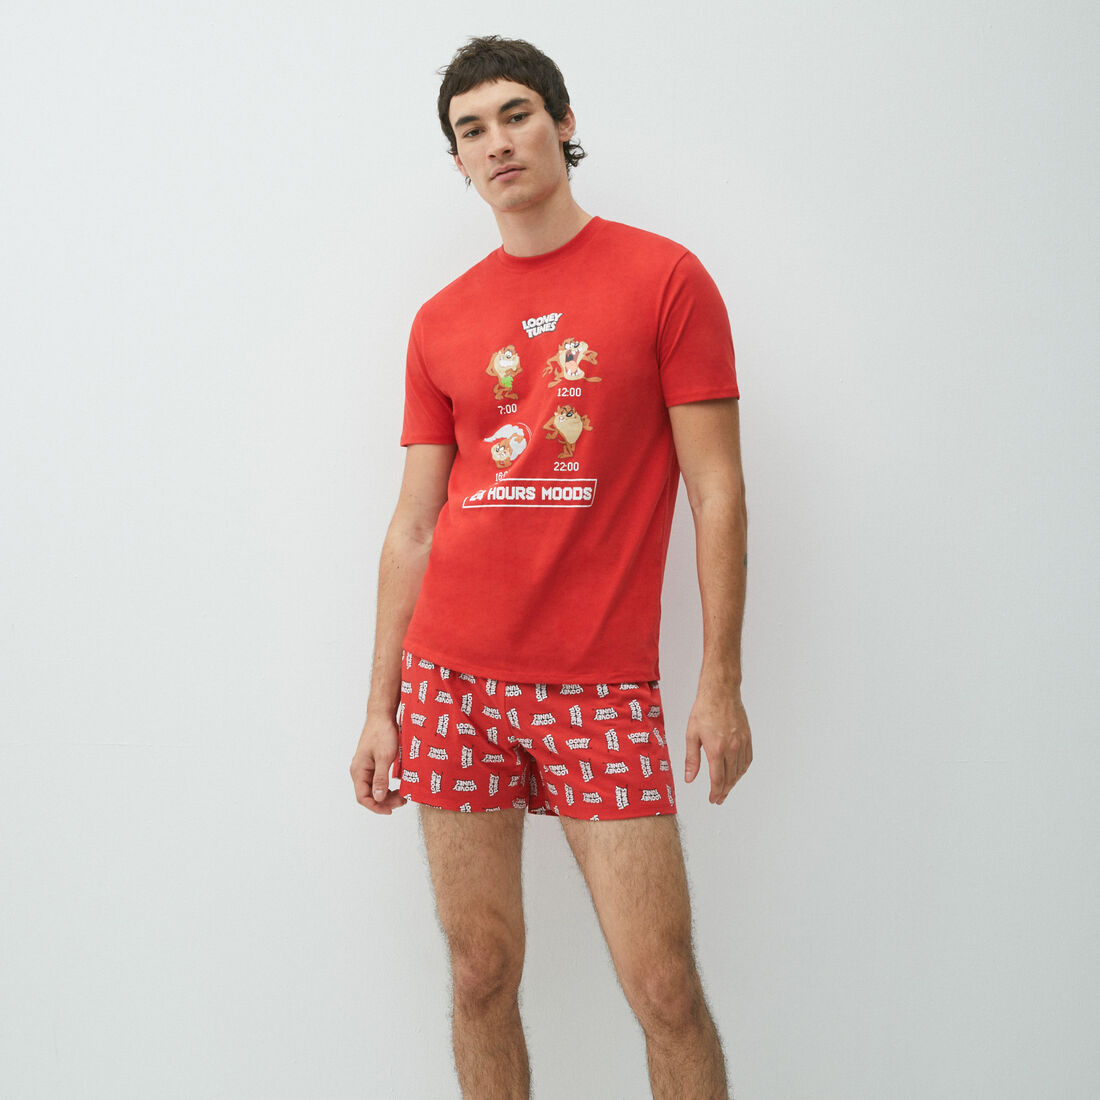 Mario t-shirt and boxer shorts set;